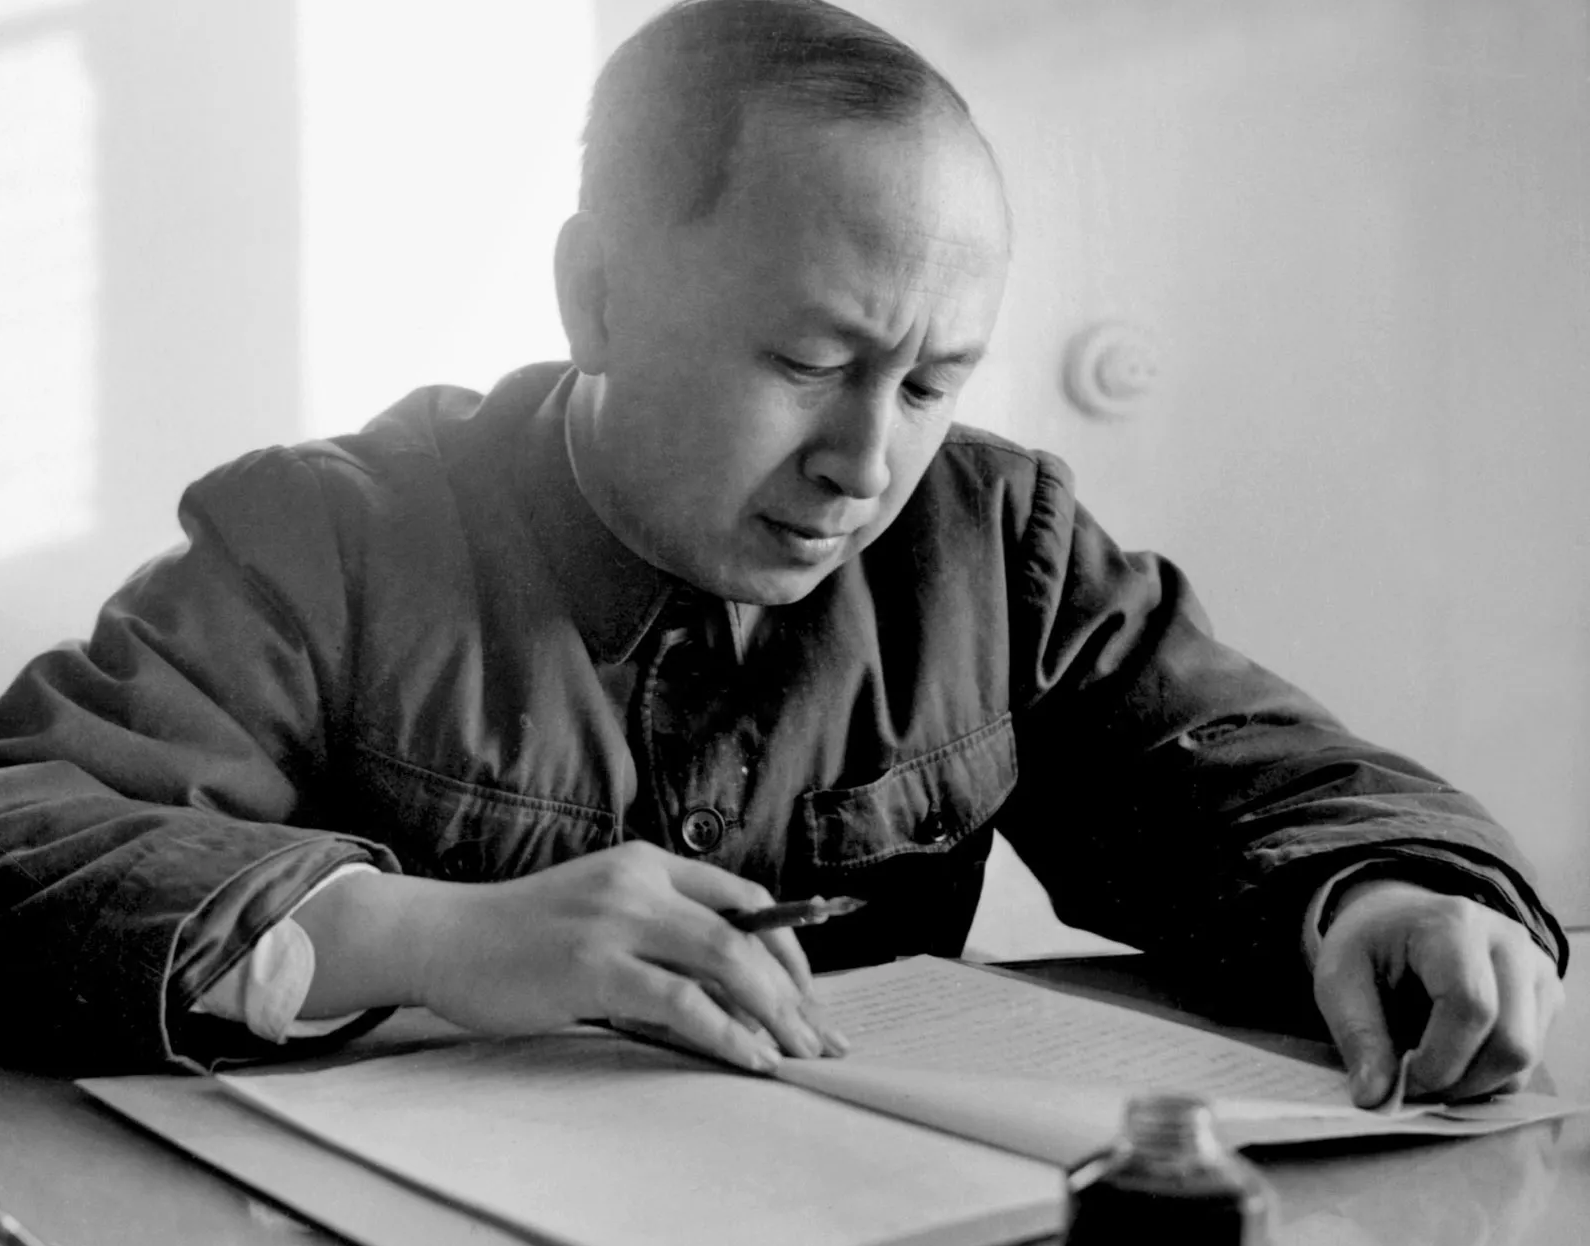 Qian Xuesen, 1957.
